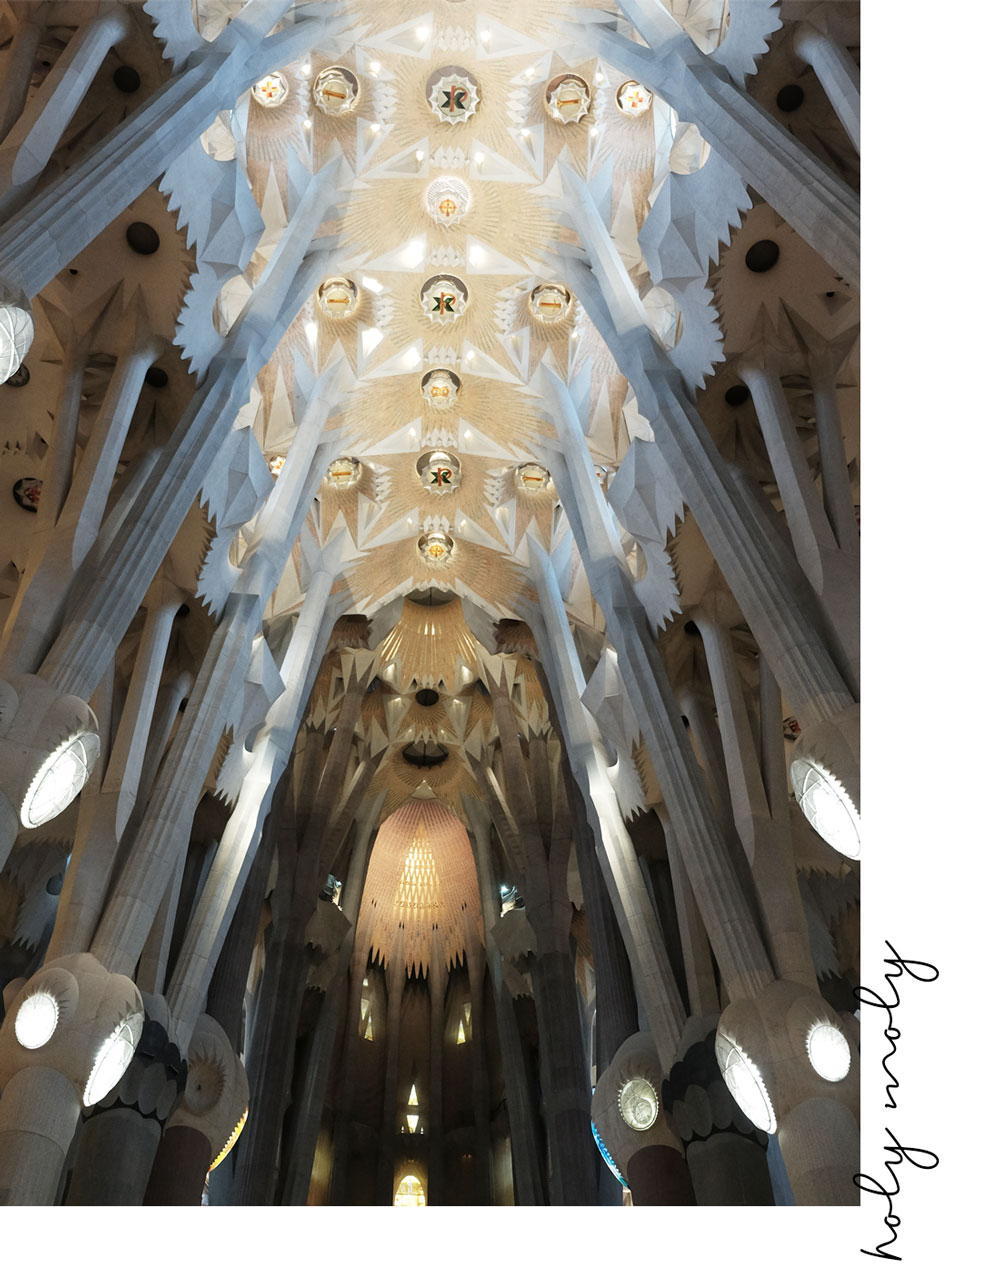 A La Sagrada Familia é um espetáculo para se ver. #1 coisa para fazer em Barcelona | The Good Living Blog #thingstodoinbarcelona #barcelonatravelguide #barcelona #lasagradafamilia